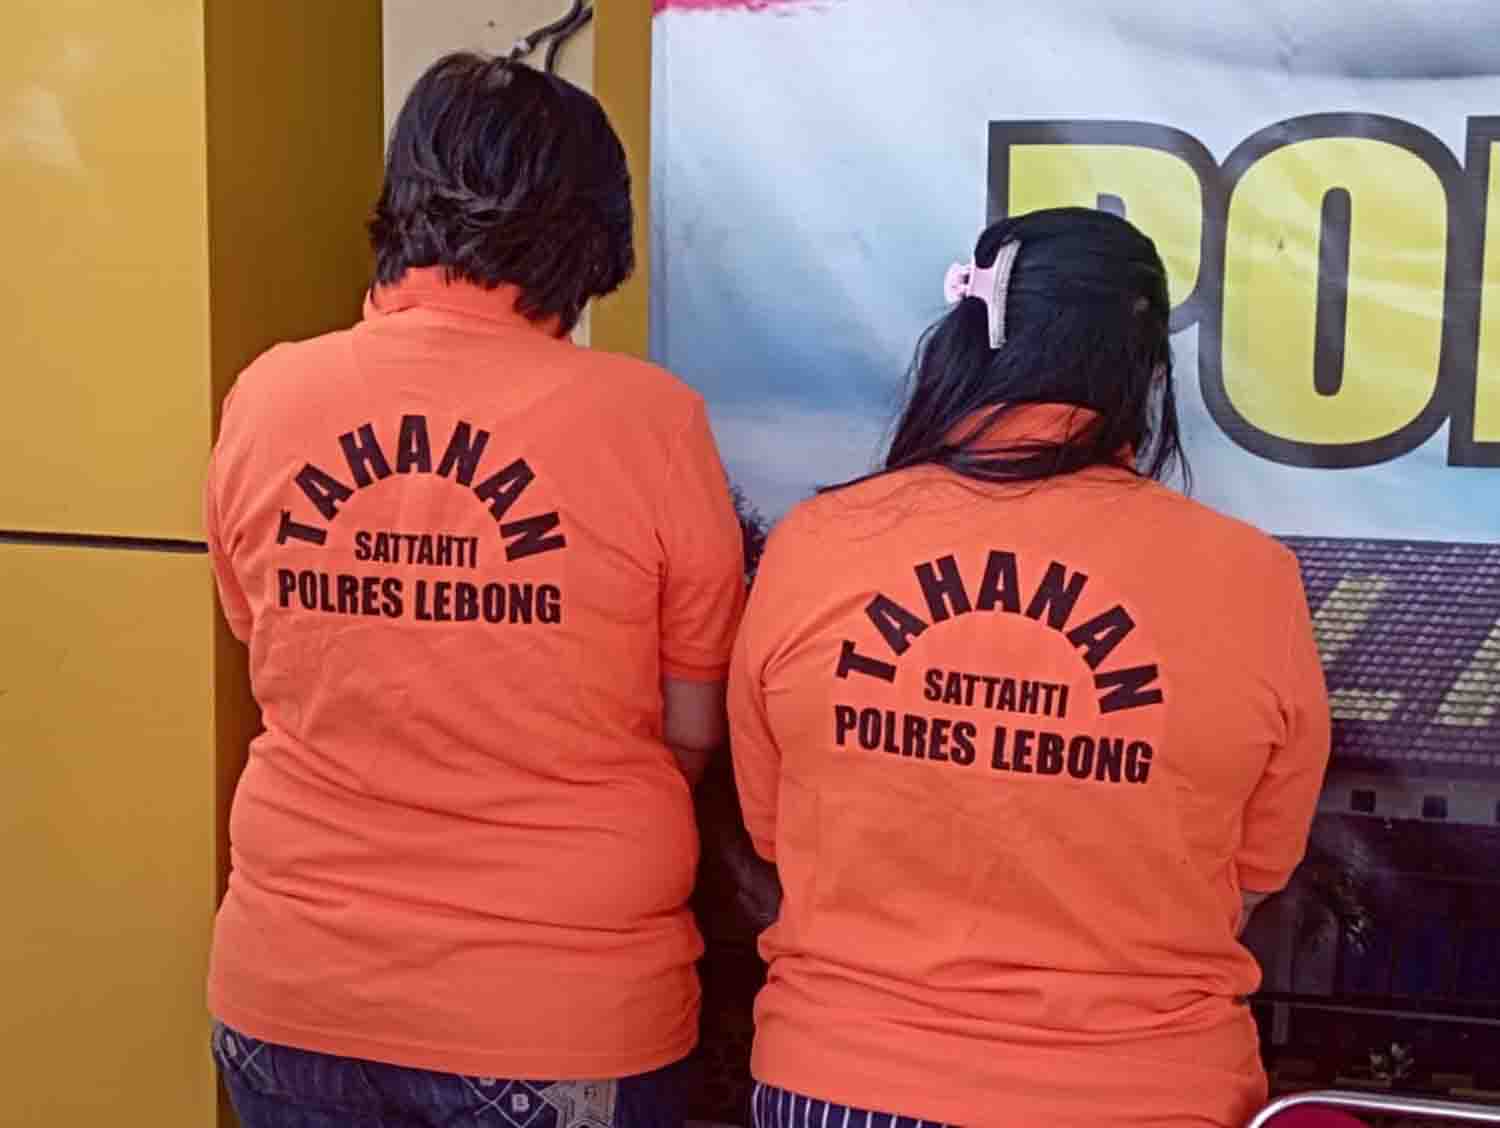 Terlibat Jaringan Togel, Bibi dan Keponakan Ditangkap Polisi